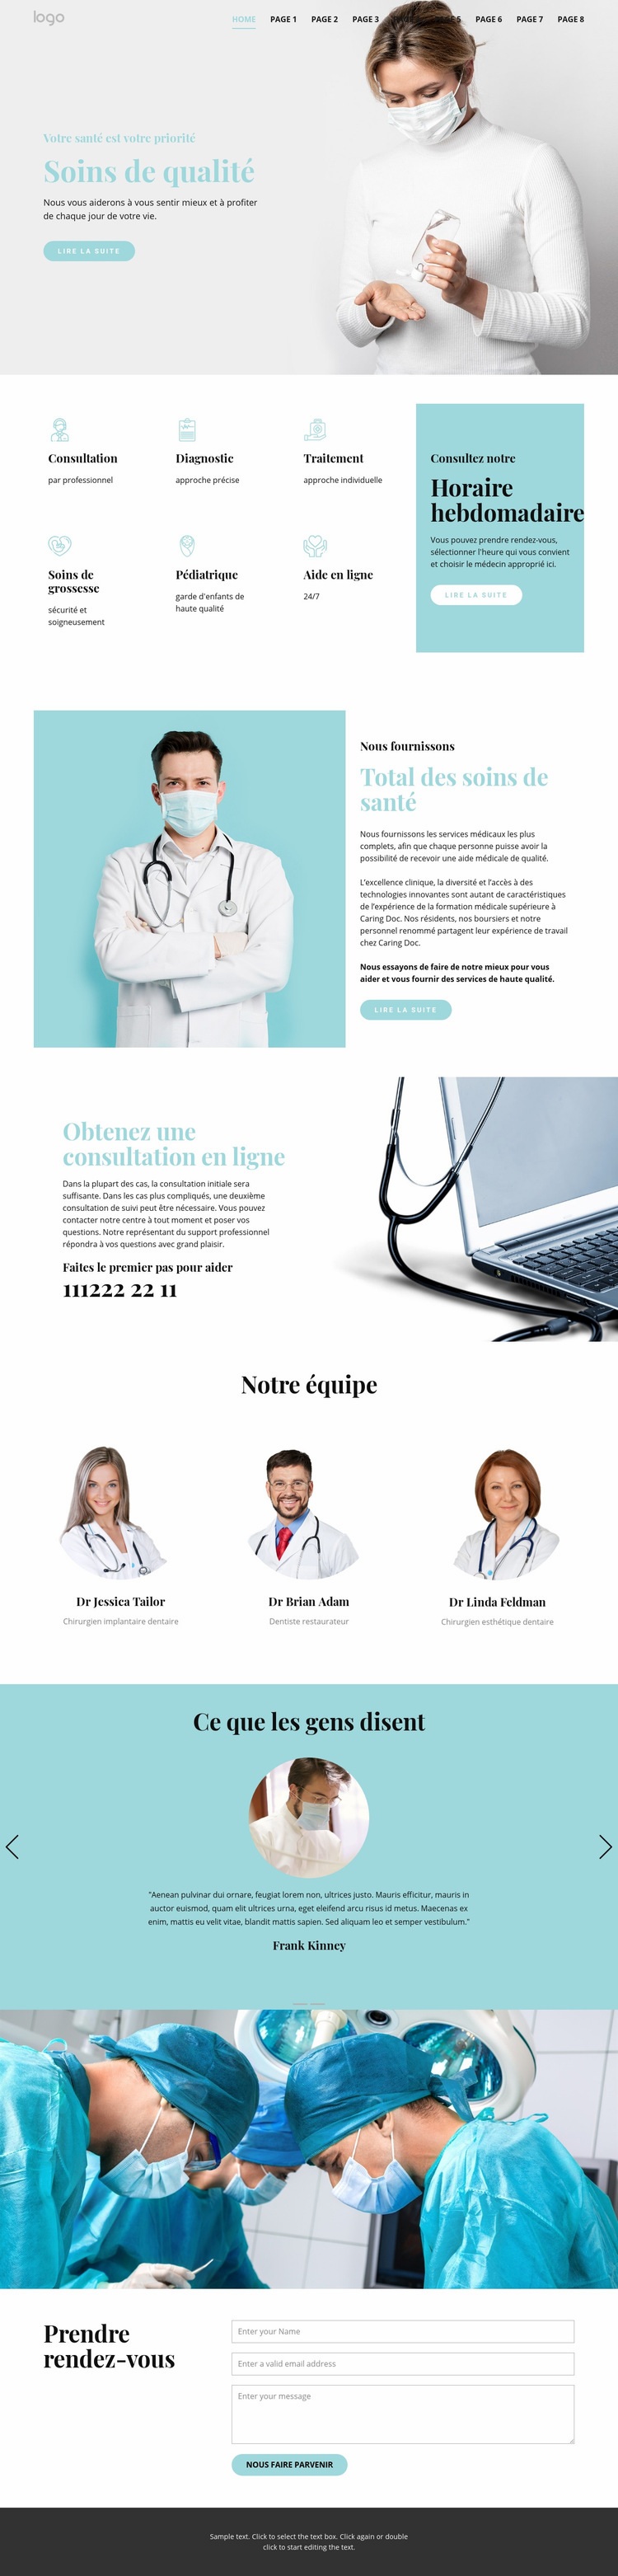 Des soins médicaux de qualité Modèle d'une page